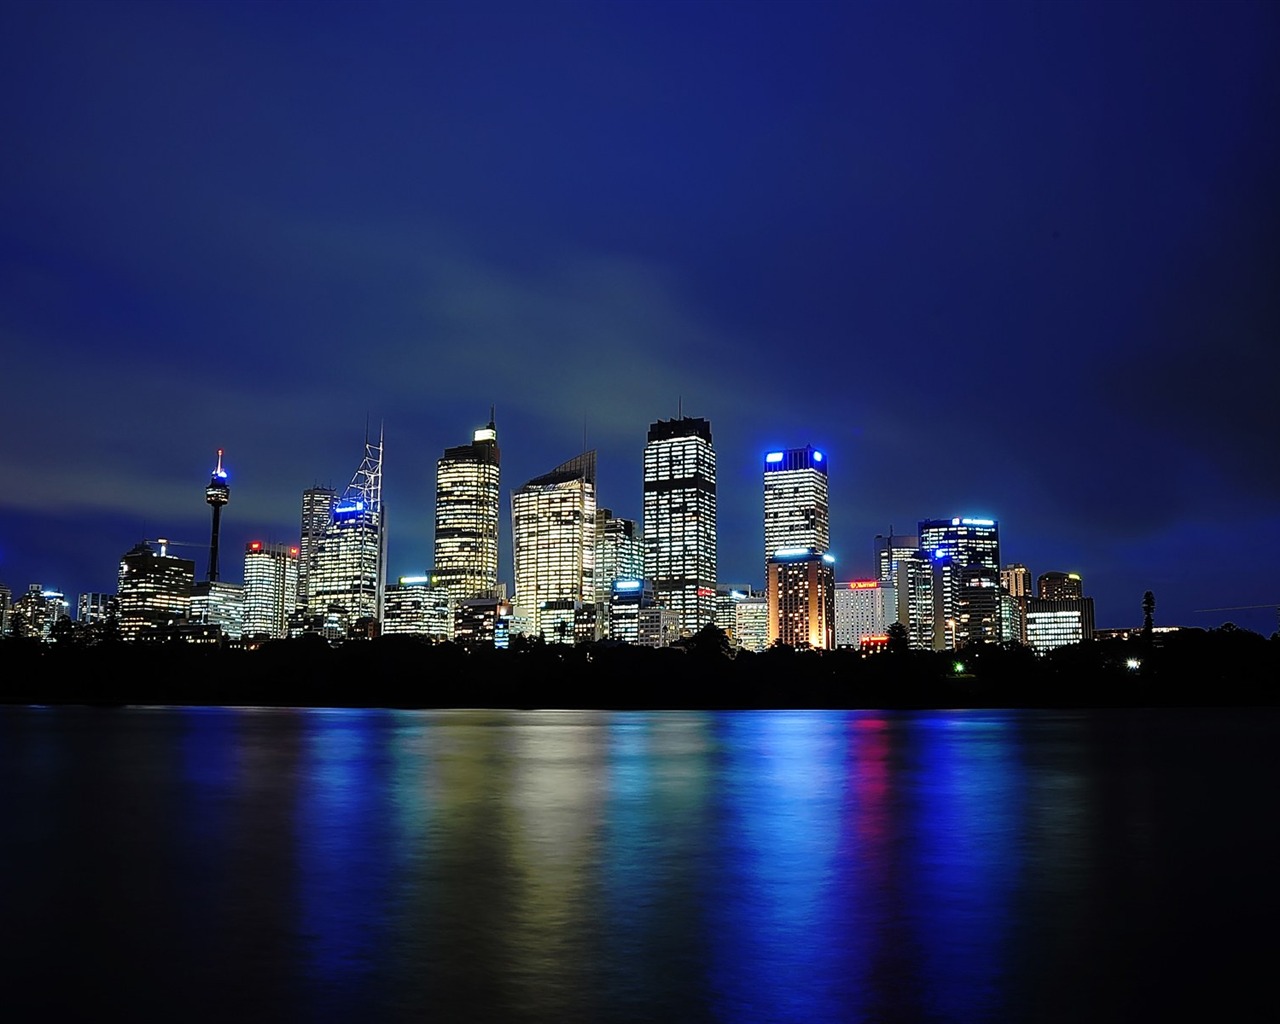 シドニーの風景のHD画像 #17 - 1280x1024